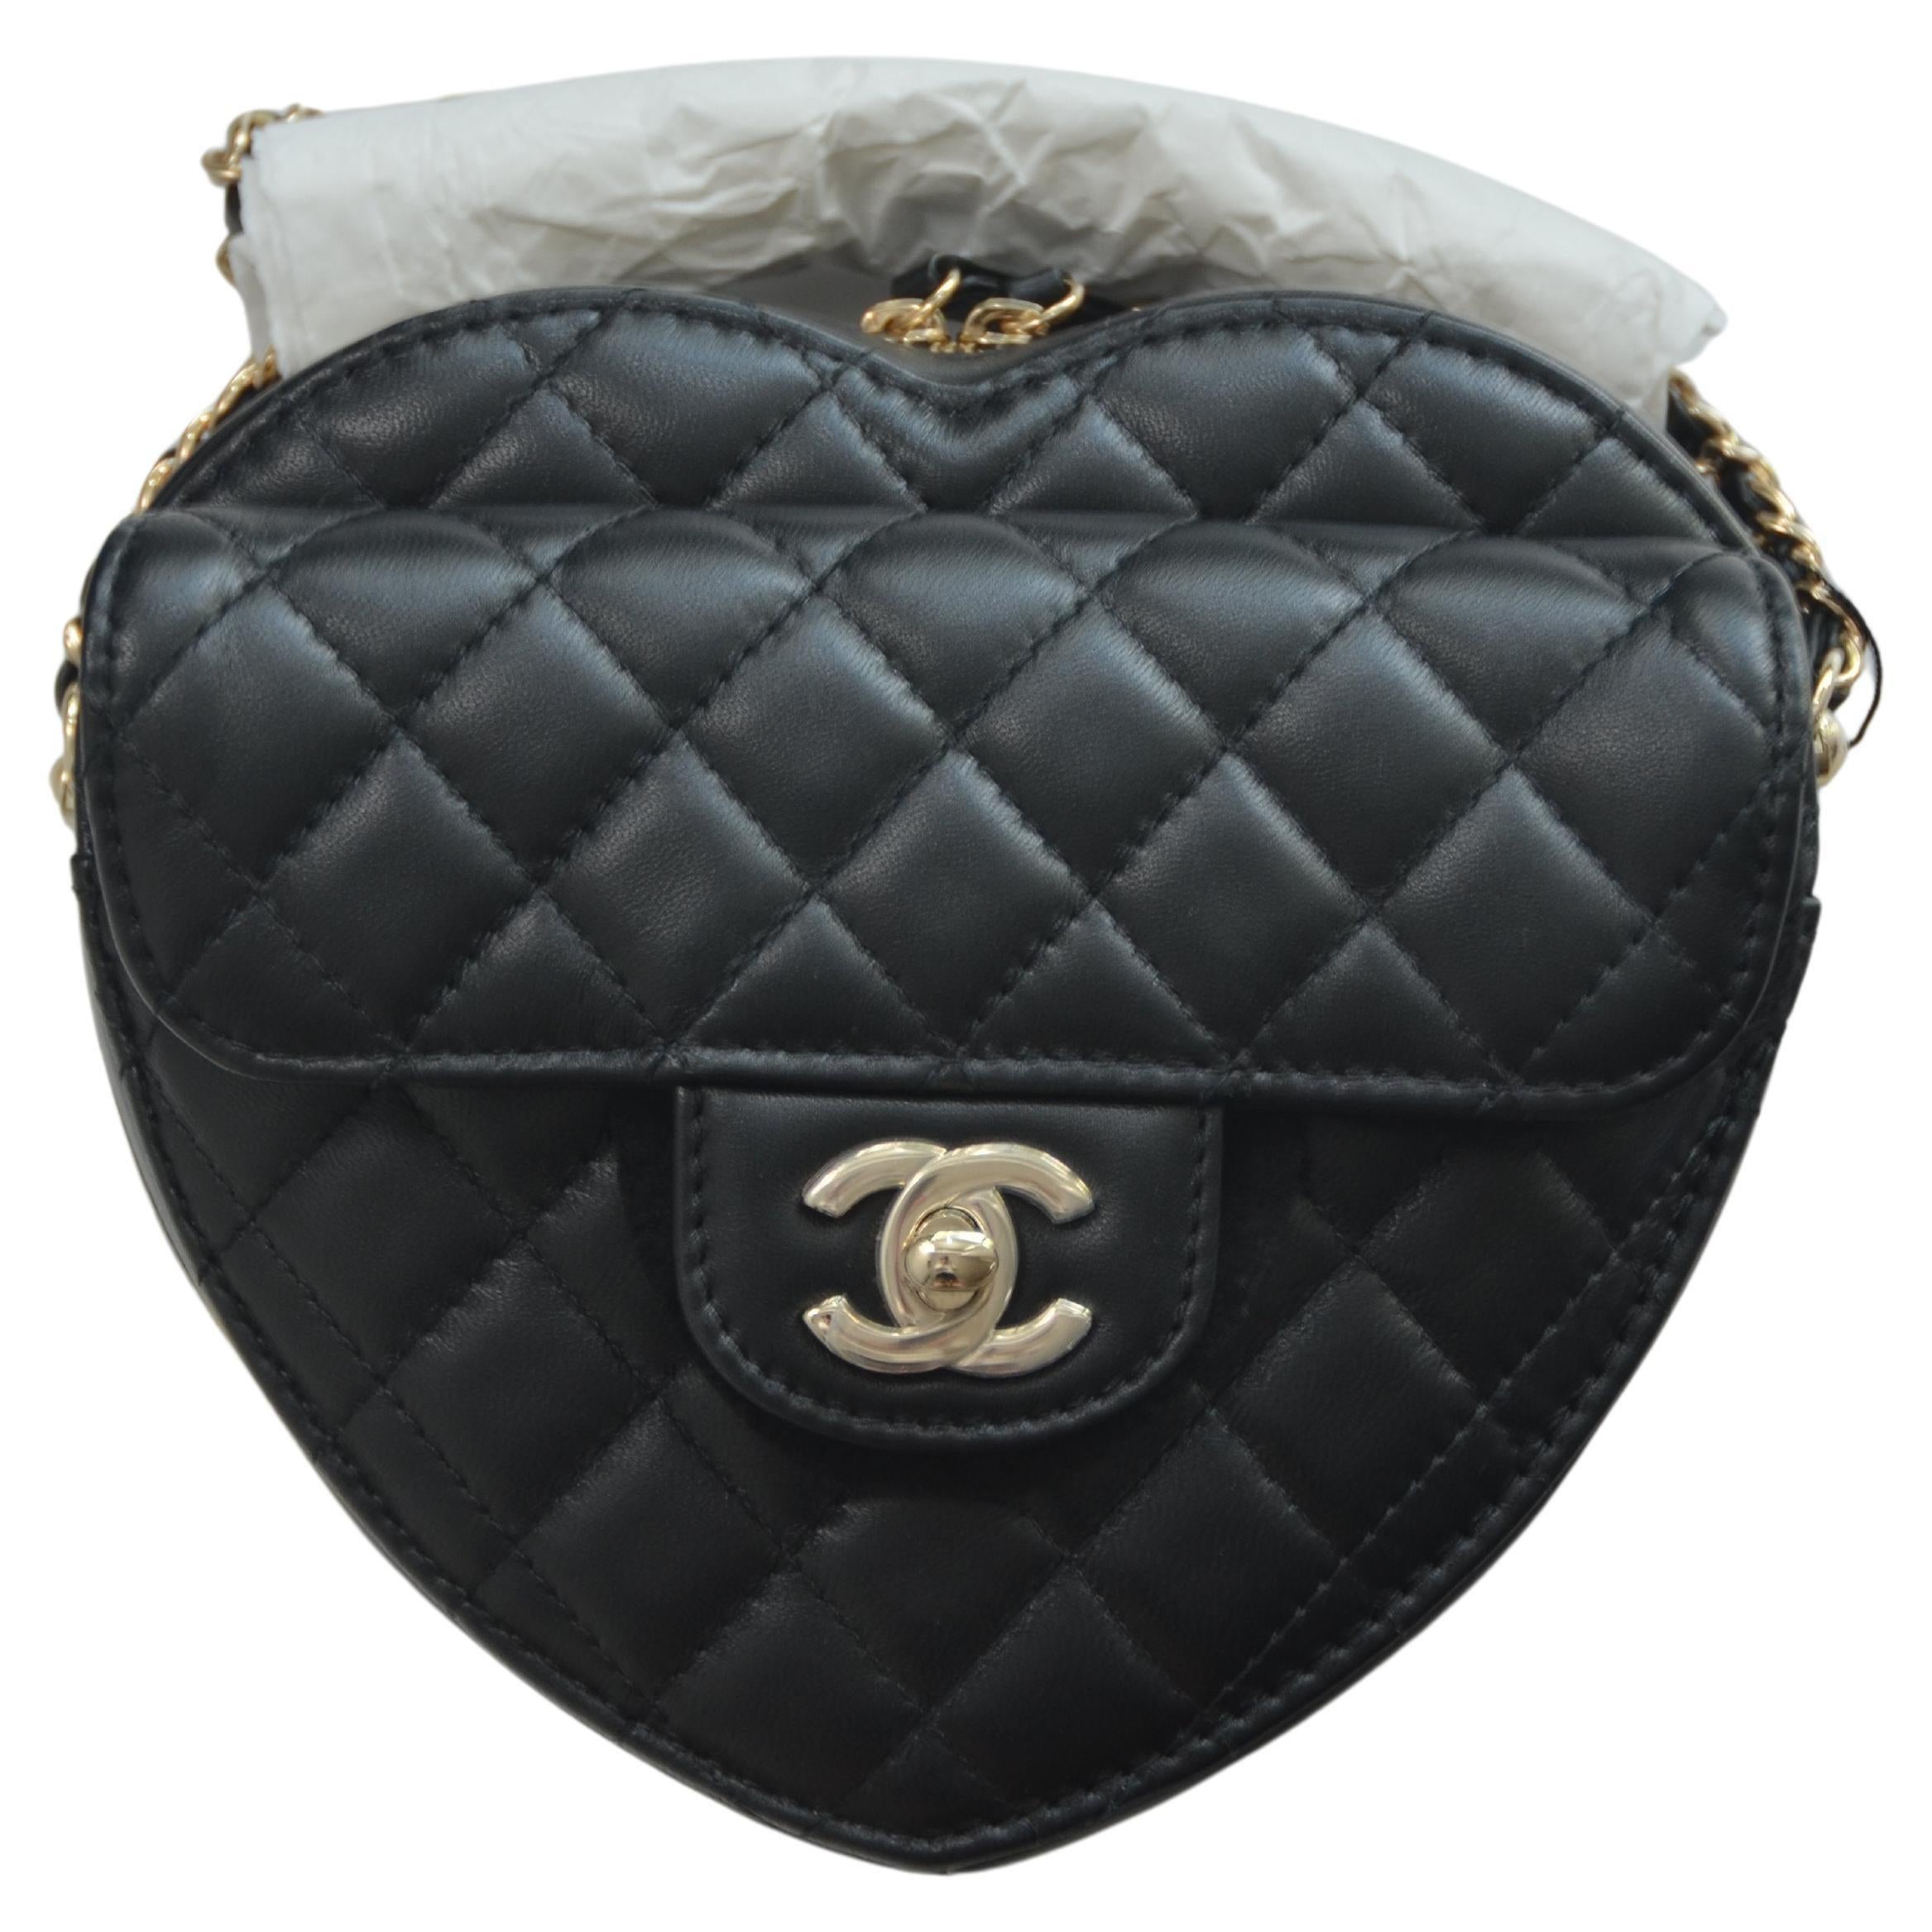 100% authentisch garantiert Chanel CHANEL Lammfell Gold-Tone Heart Handtasche NEU mit Tags Größte Größe in diesem Stil. bitte überprüfen Sie die Messungen. Abmessungen ca. 6,4 × 7 × 2,5 Zoll
Tasche ist makellos neu mit Tags, klarem Kunststoff auf CC